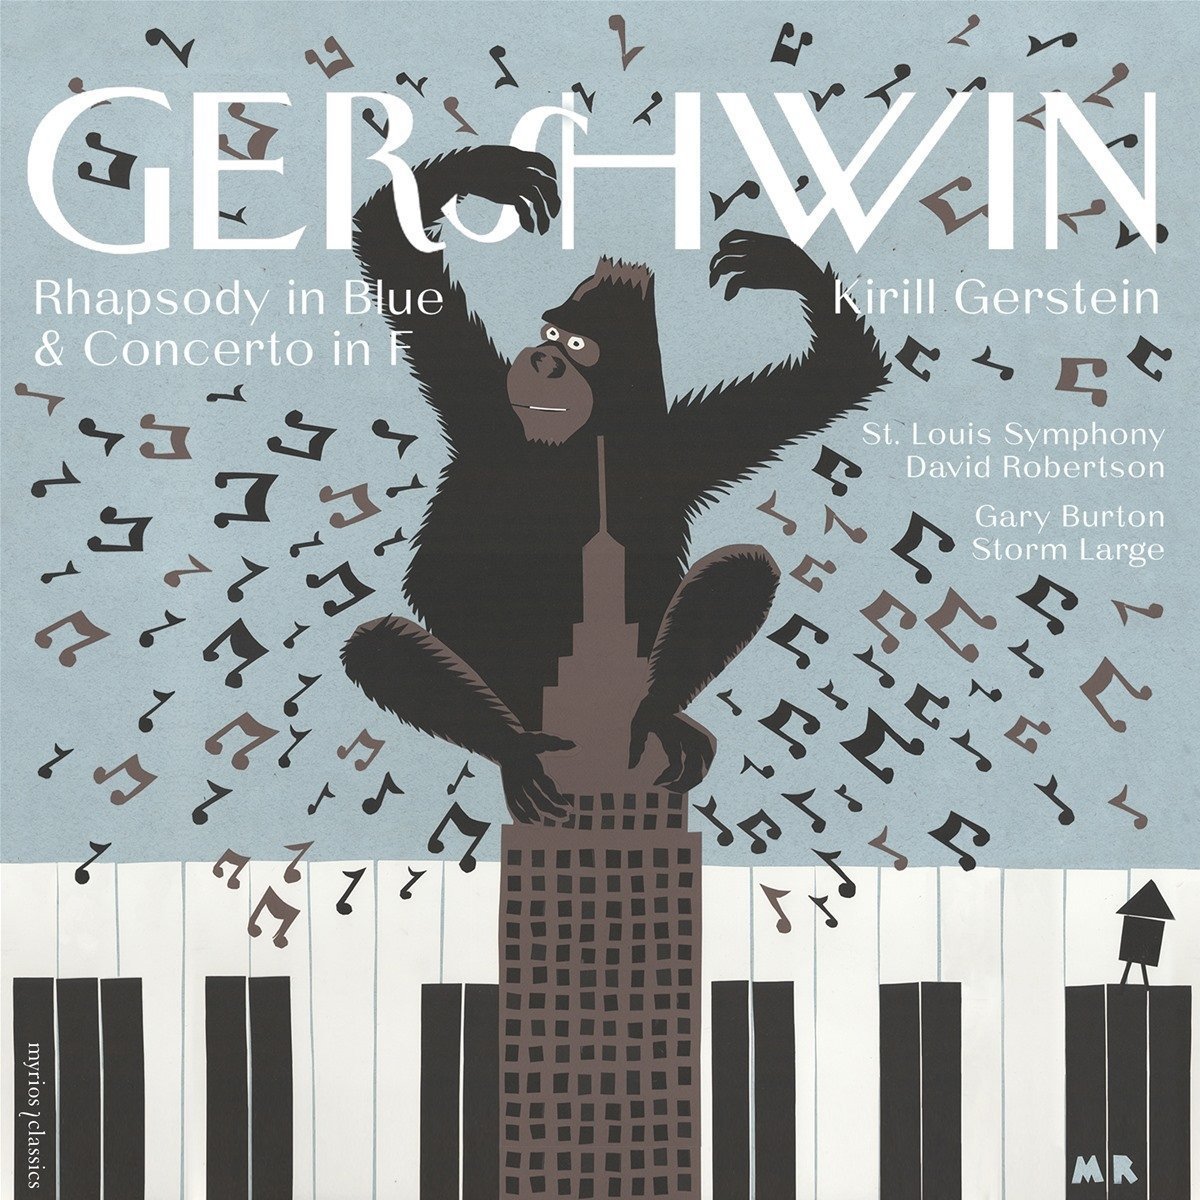 Gerstein's Gershwin